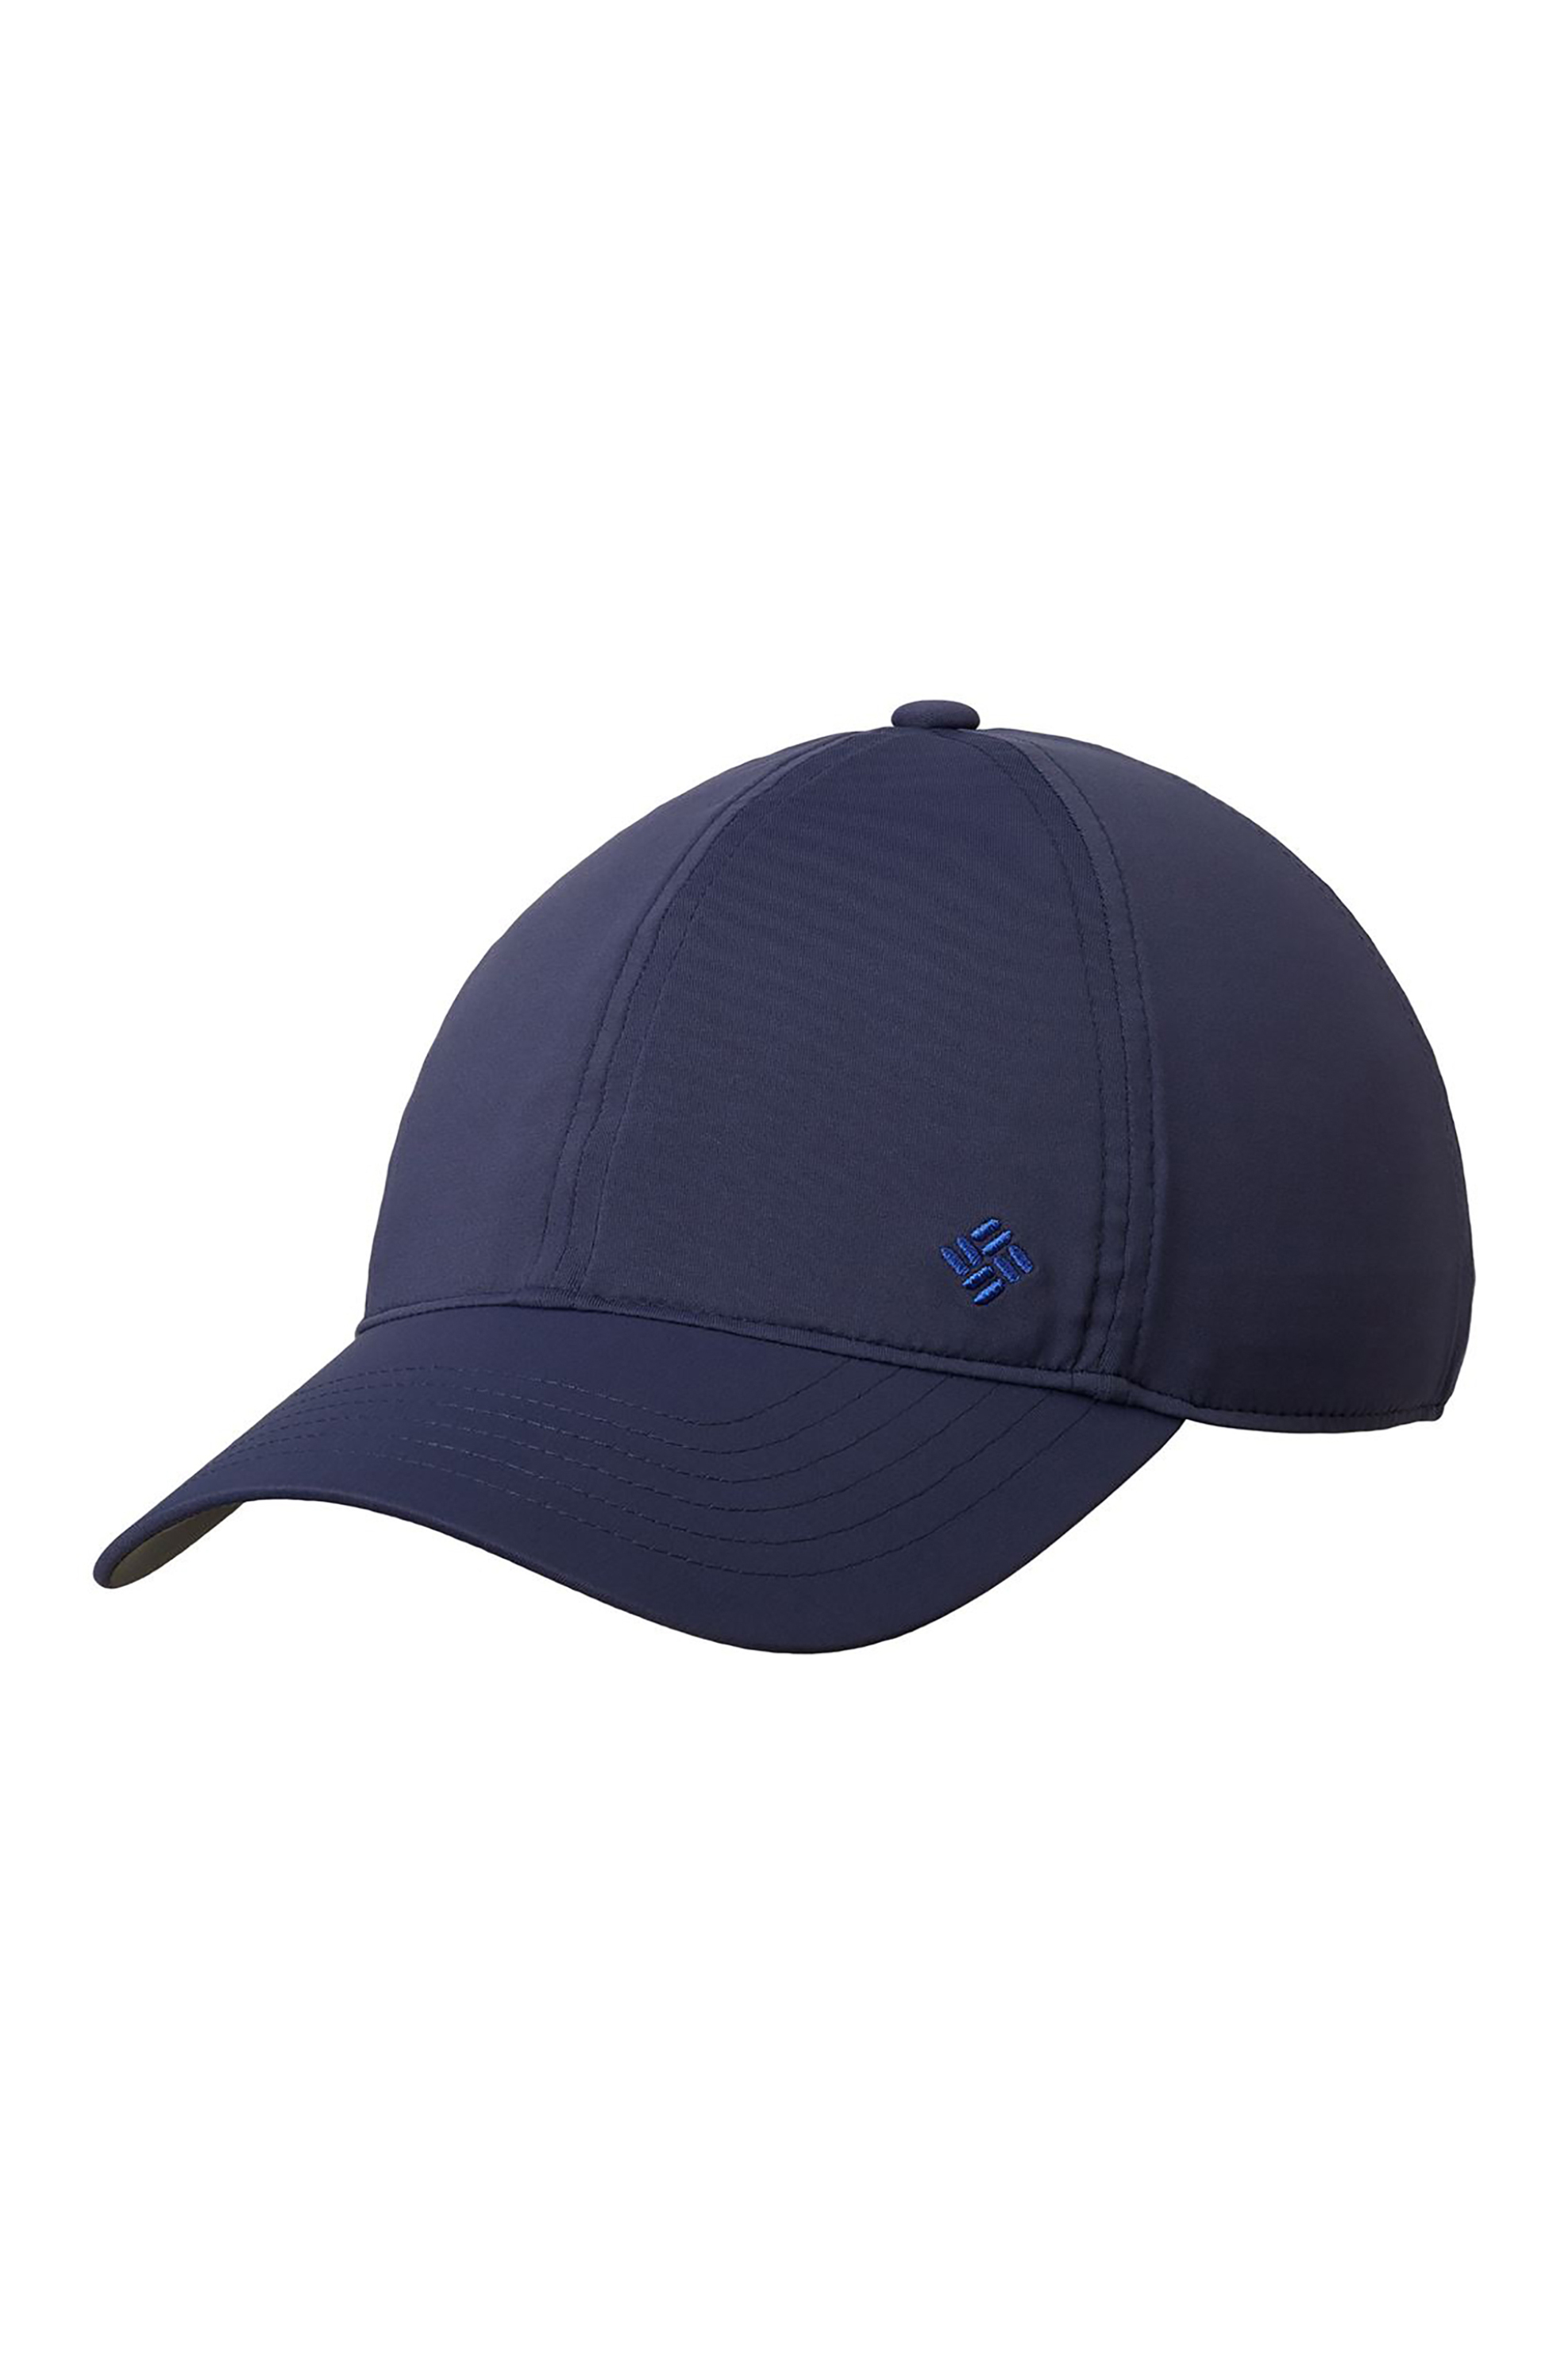 Ανδρική Μόδα > Ανδρικά Αξεσουάρ > Ανδρικά Καπέλα & Σκούφοι Columbia unisex καπέλο jockey με κεντημένο λογότυπο ''Coolhead™ II'' - 1840001466TEM Μπλε